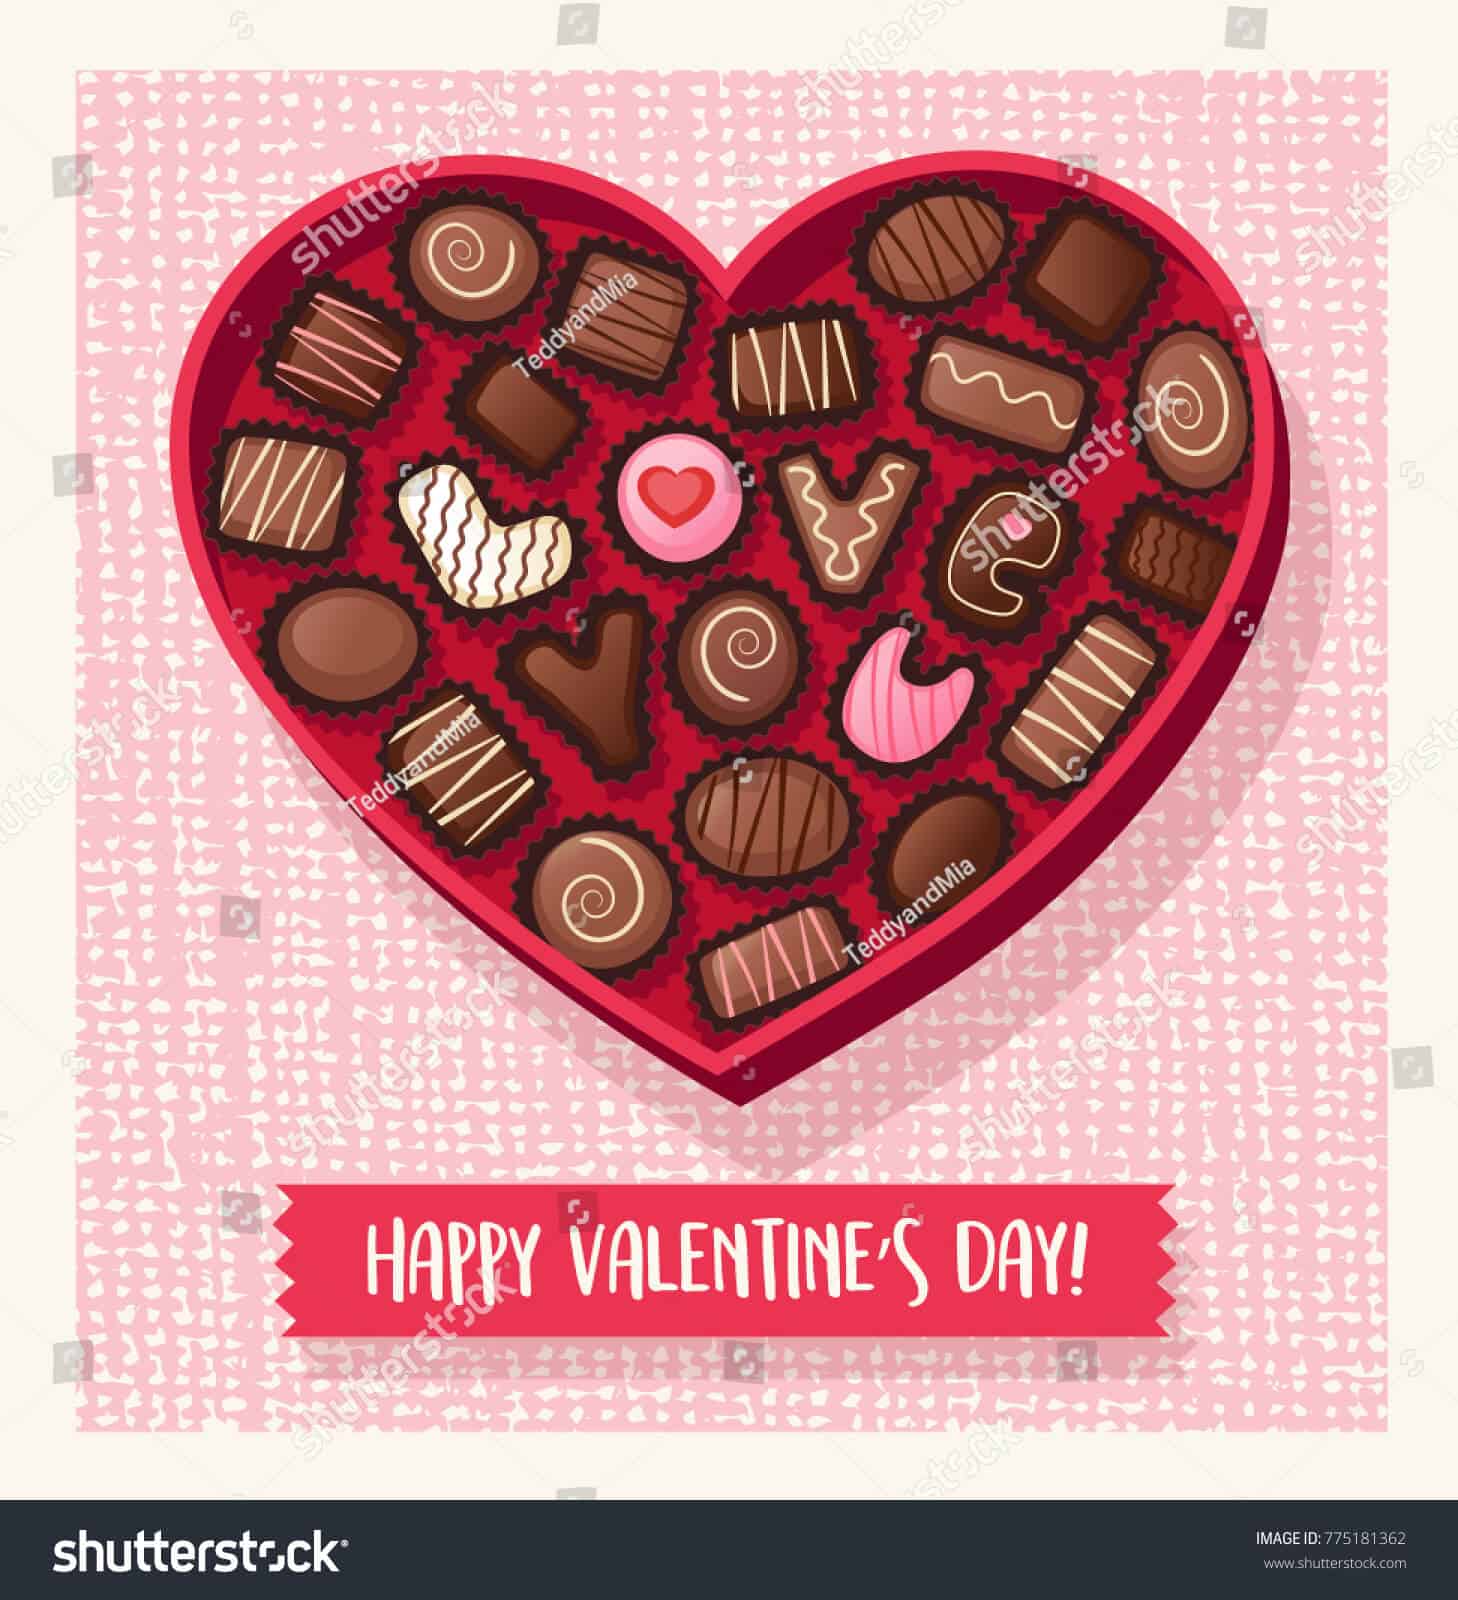 Hãy giải mã những hình ảnh chocolate Valentine với chúng tôi. Những bức ảnh tuyệt đẹp về chocolate sẽ giúp bạn tưởng tượng về những giây phút lãng mạn bên người yêu trong ngày Valentine.